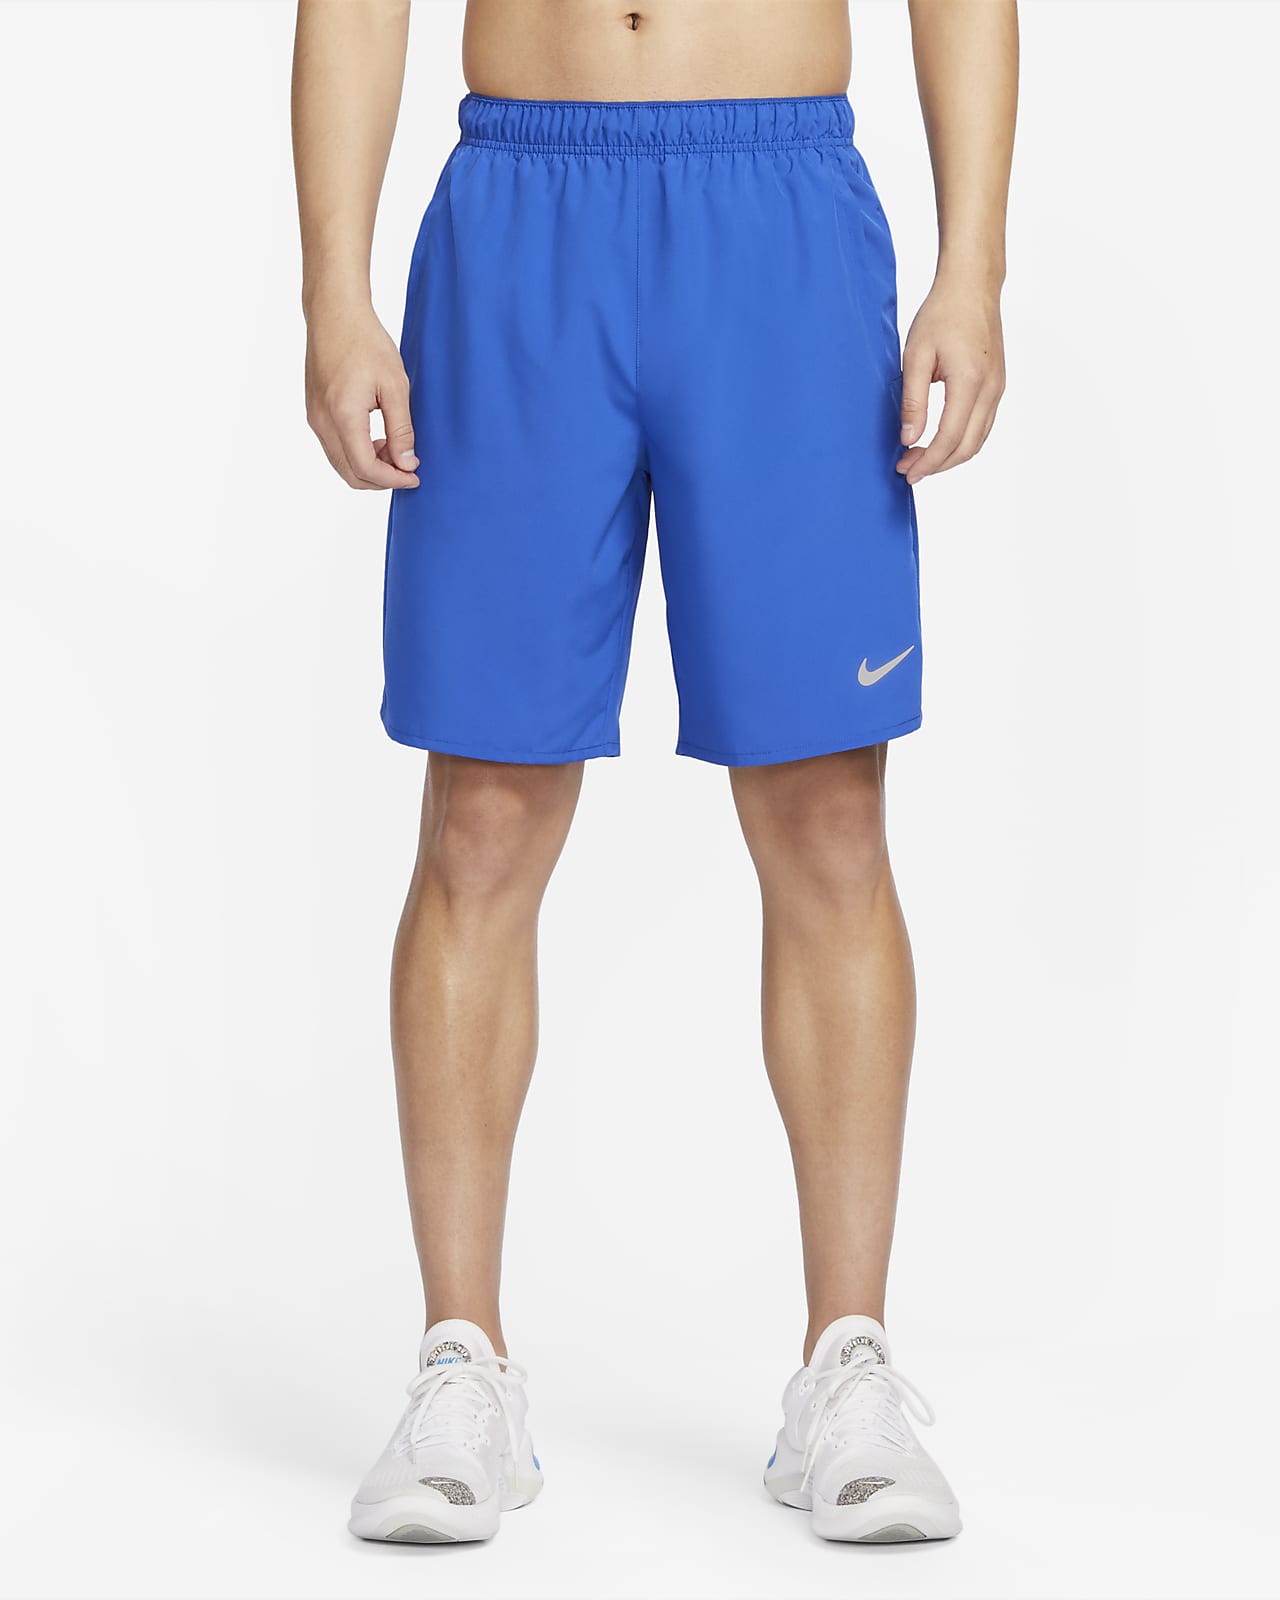 Alsidige Nike Challenger Dri-FIT-shorts (23 cm) uden for til mænd